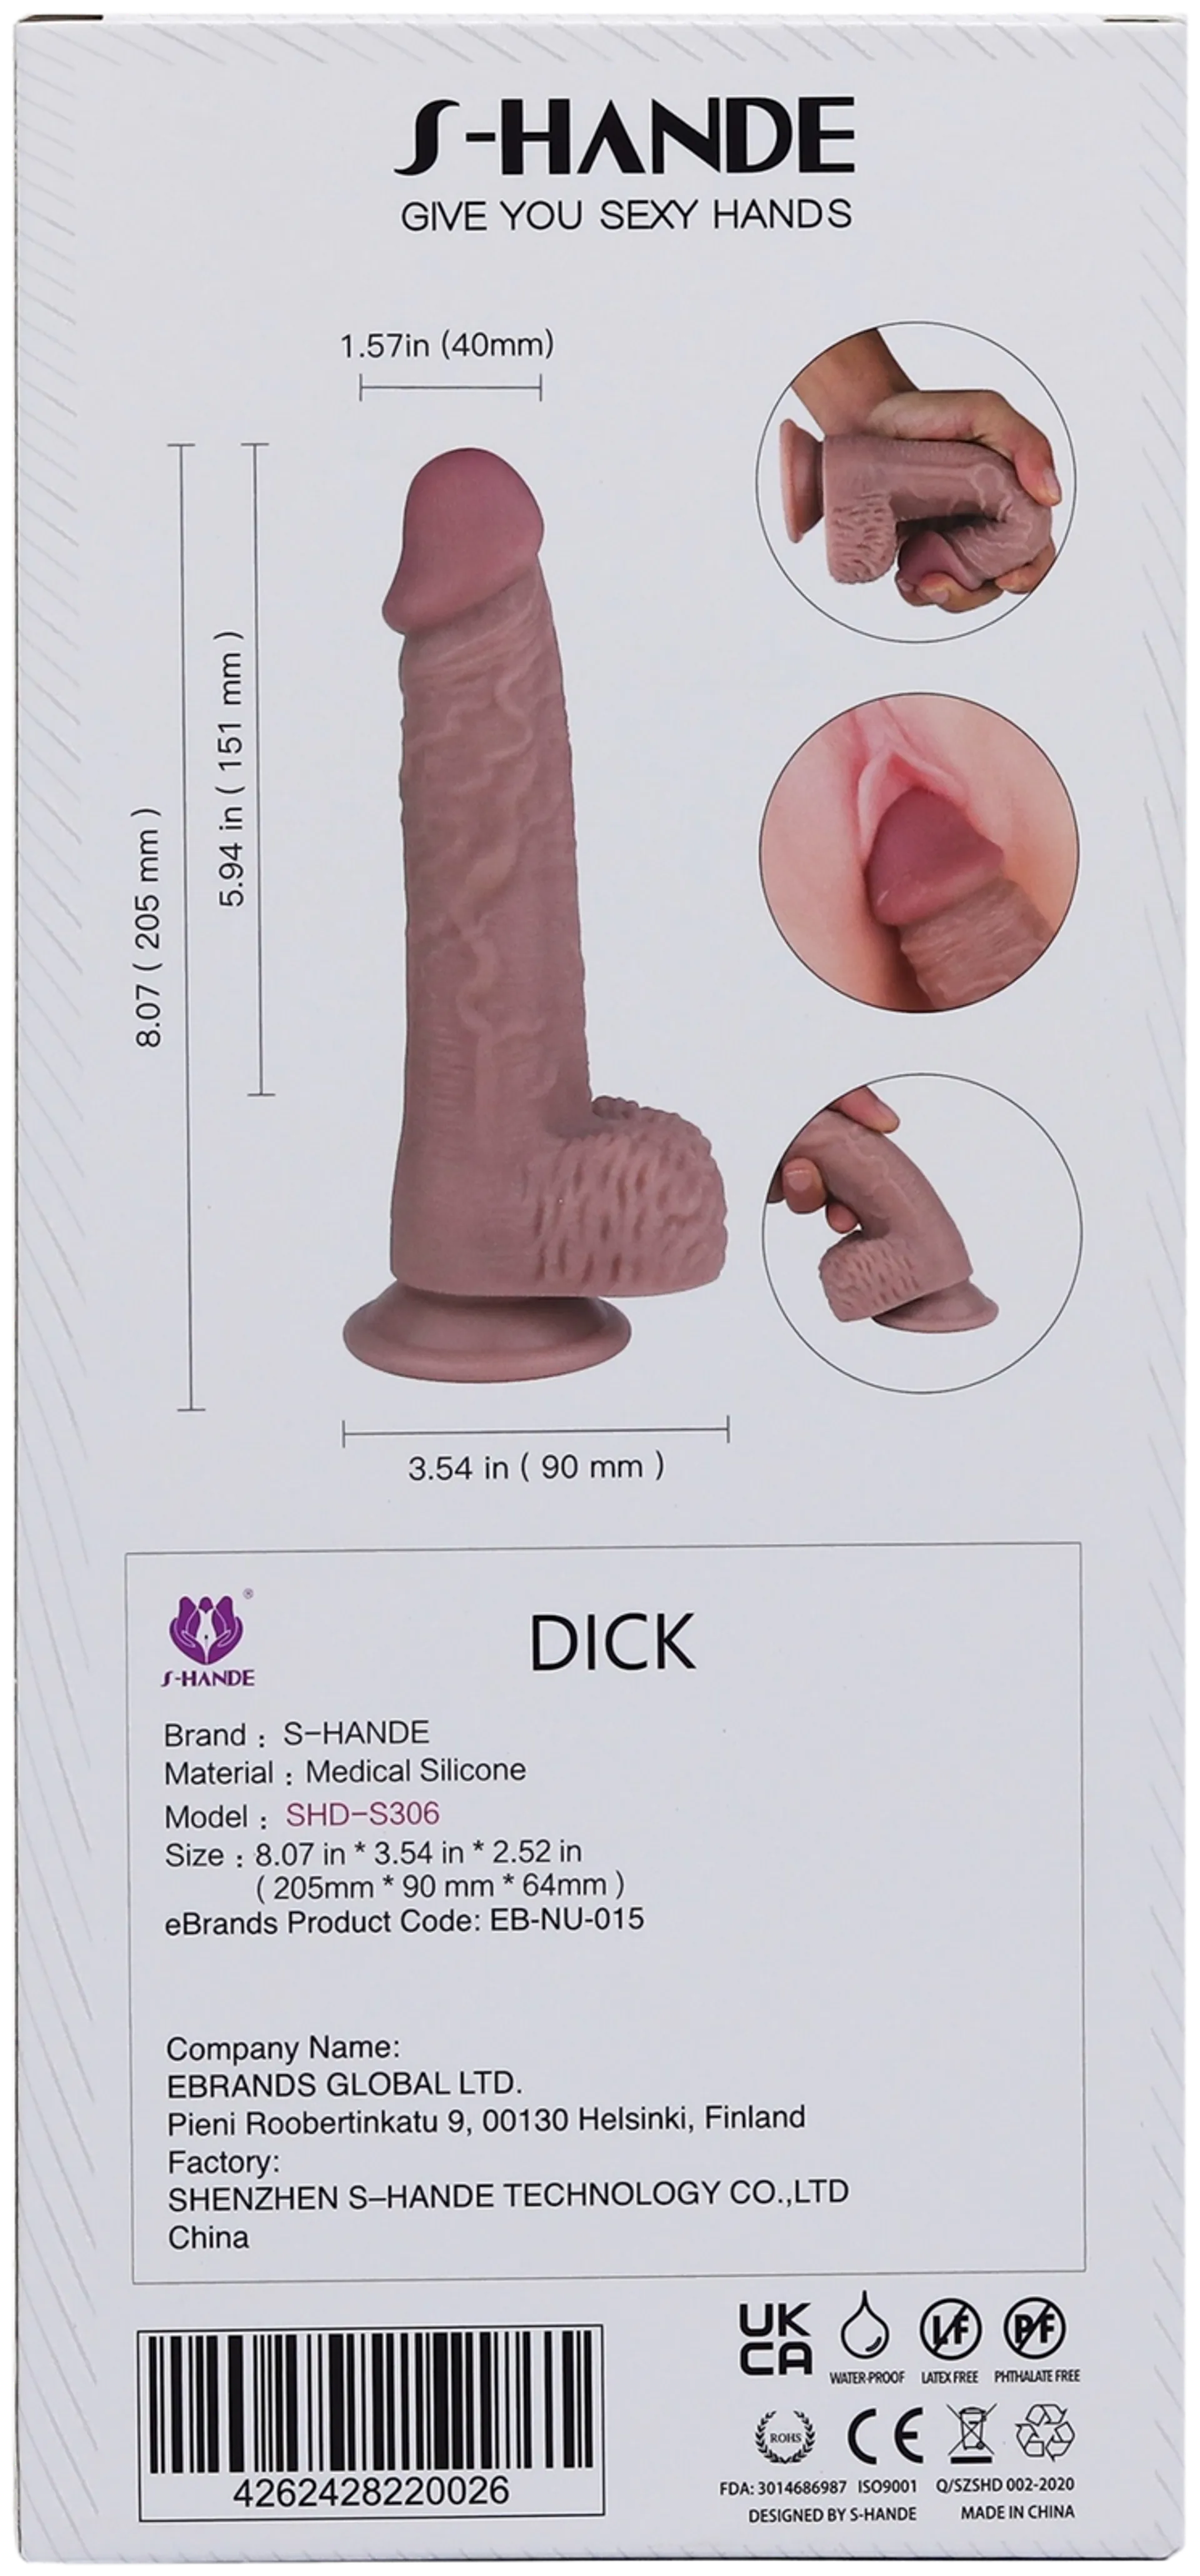 Dick dildo - 3